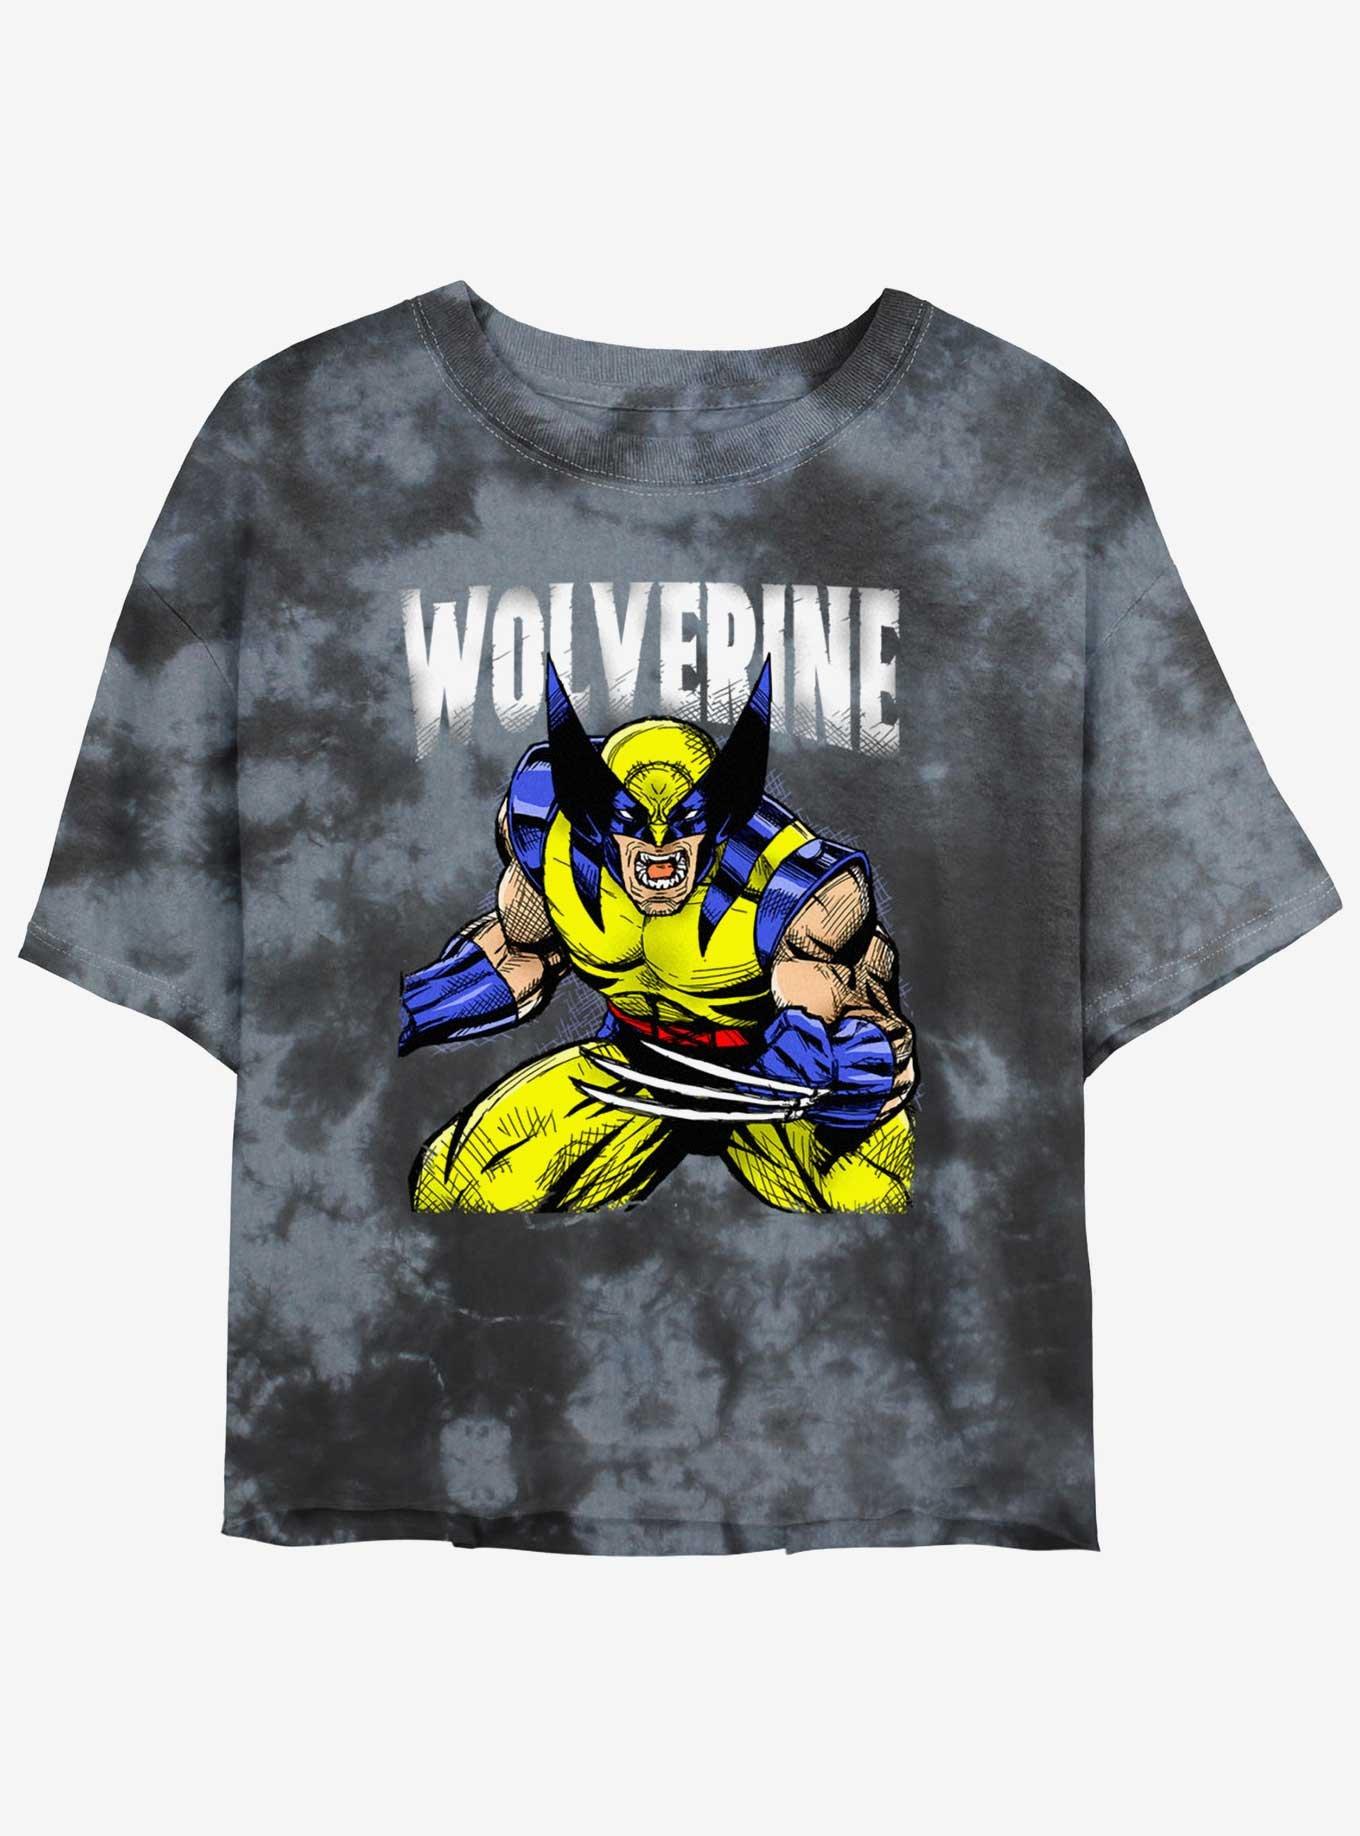 Wolverine Rage On Girls Tie-Dye Crop T-Shirt, BLKCHAR, hi-res